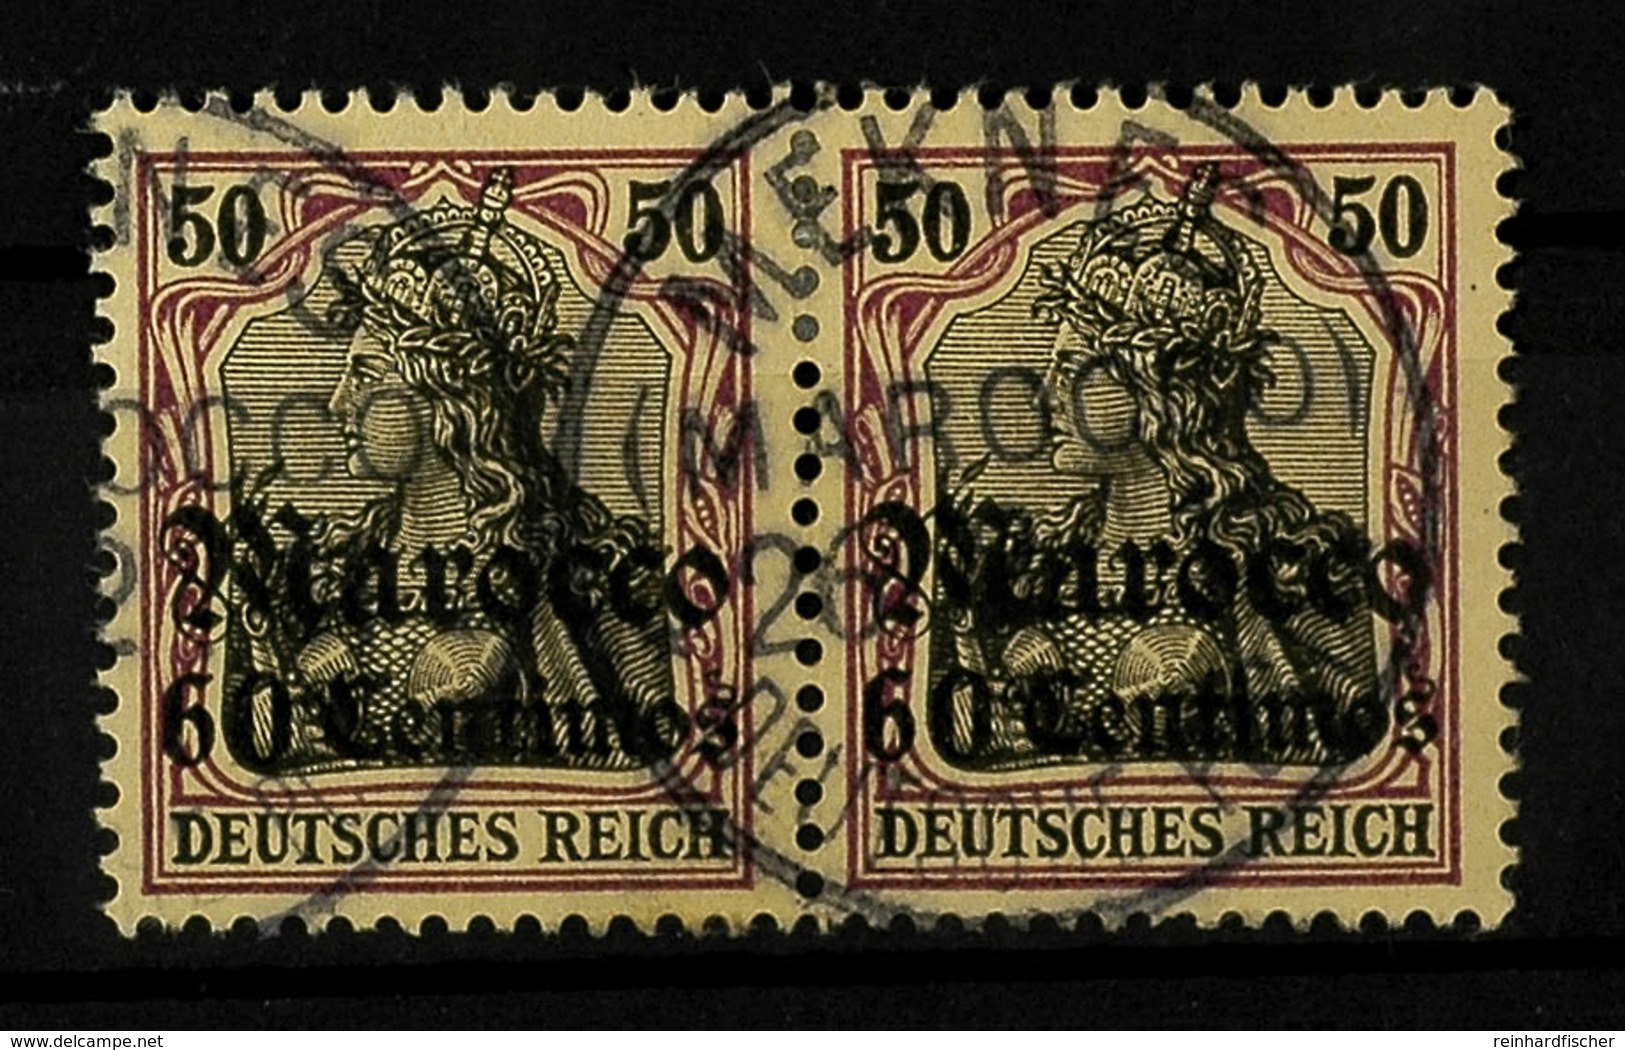 60 C. Auf 50 Pfg Germania Ohne Wz., Waagerechtes Kabinettpaar Mit Klarem K1 MEKNES (MAROCCO), Katalog: 28(2) O - Deutsche Post In Marokko